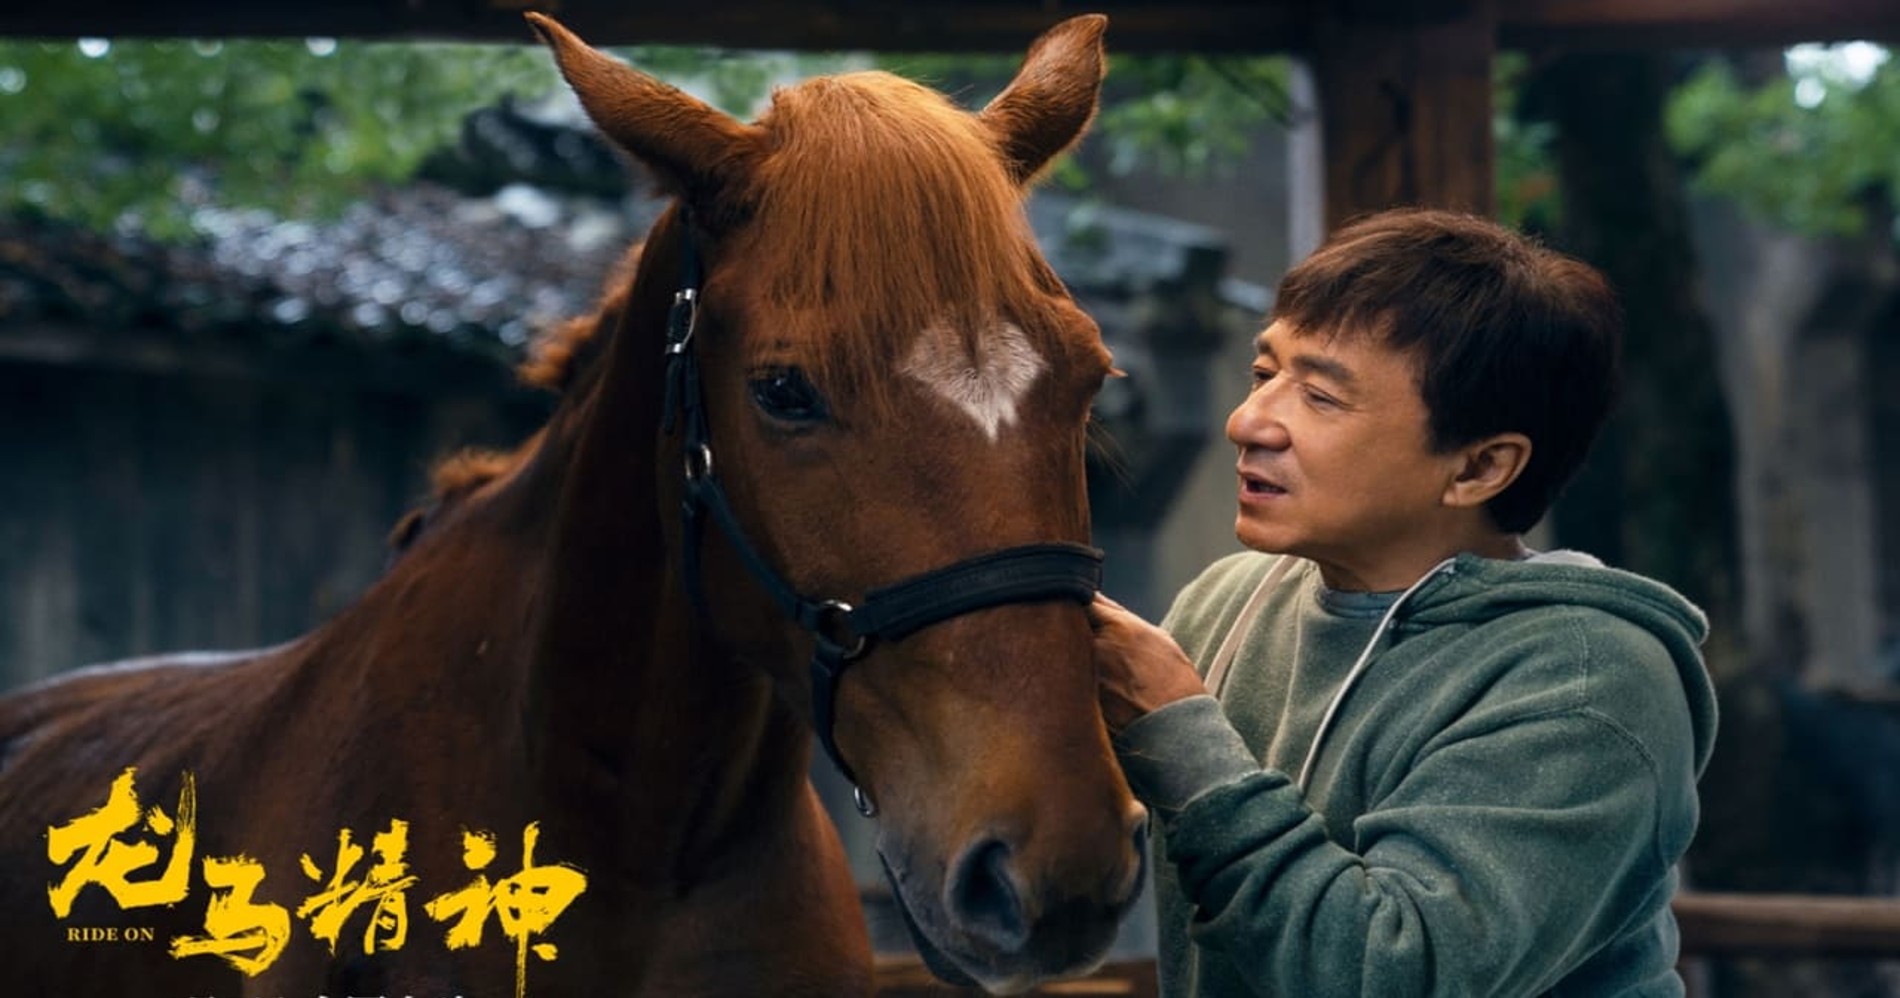 Hypeabis Sinopsis Ride On, Film Terbaru Jackie Chan jadi Stuntman